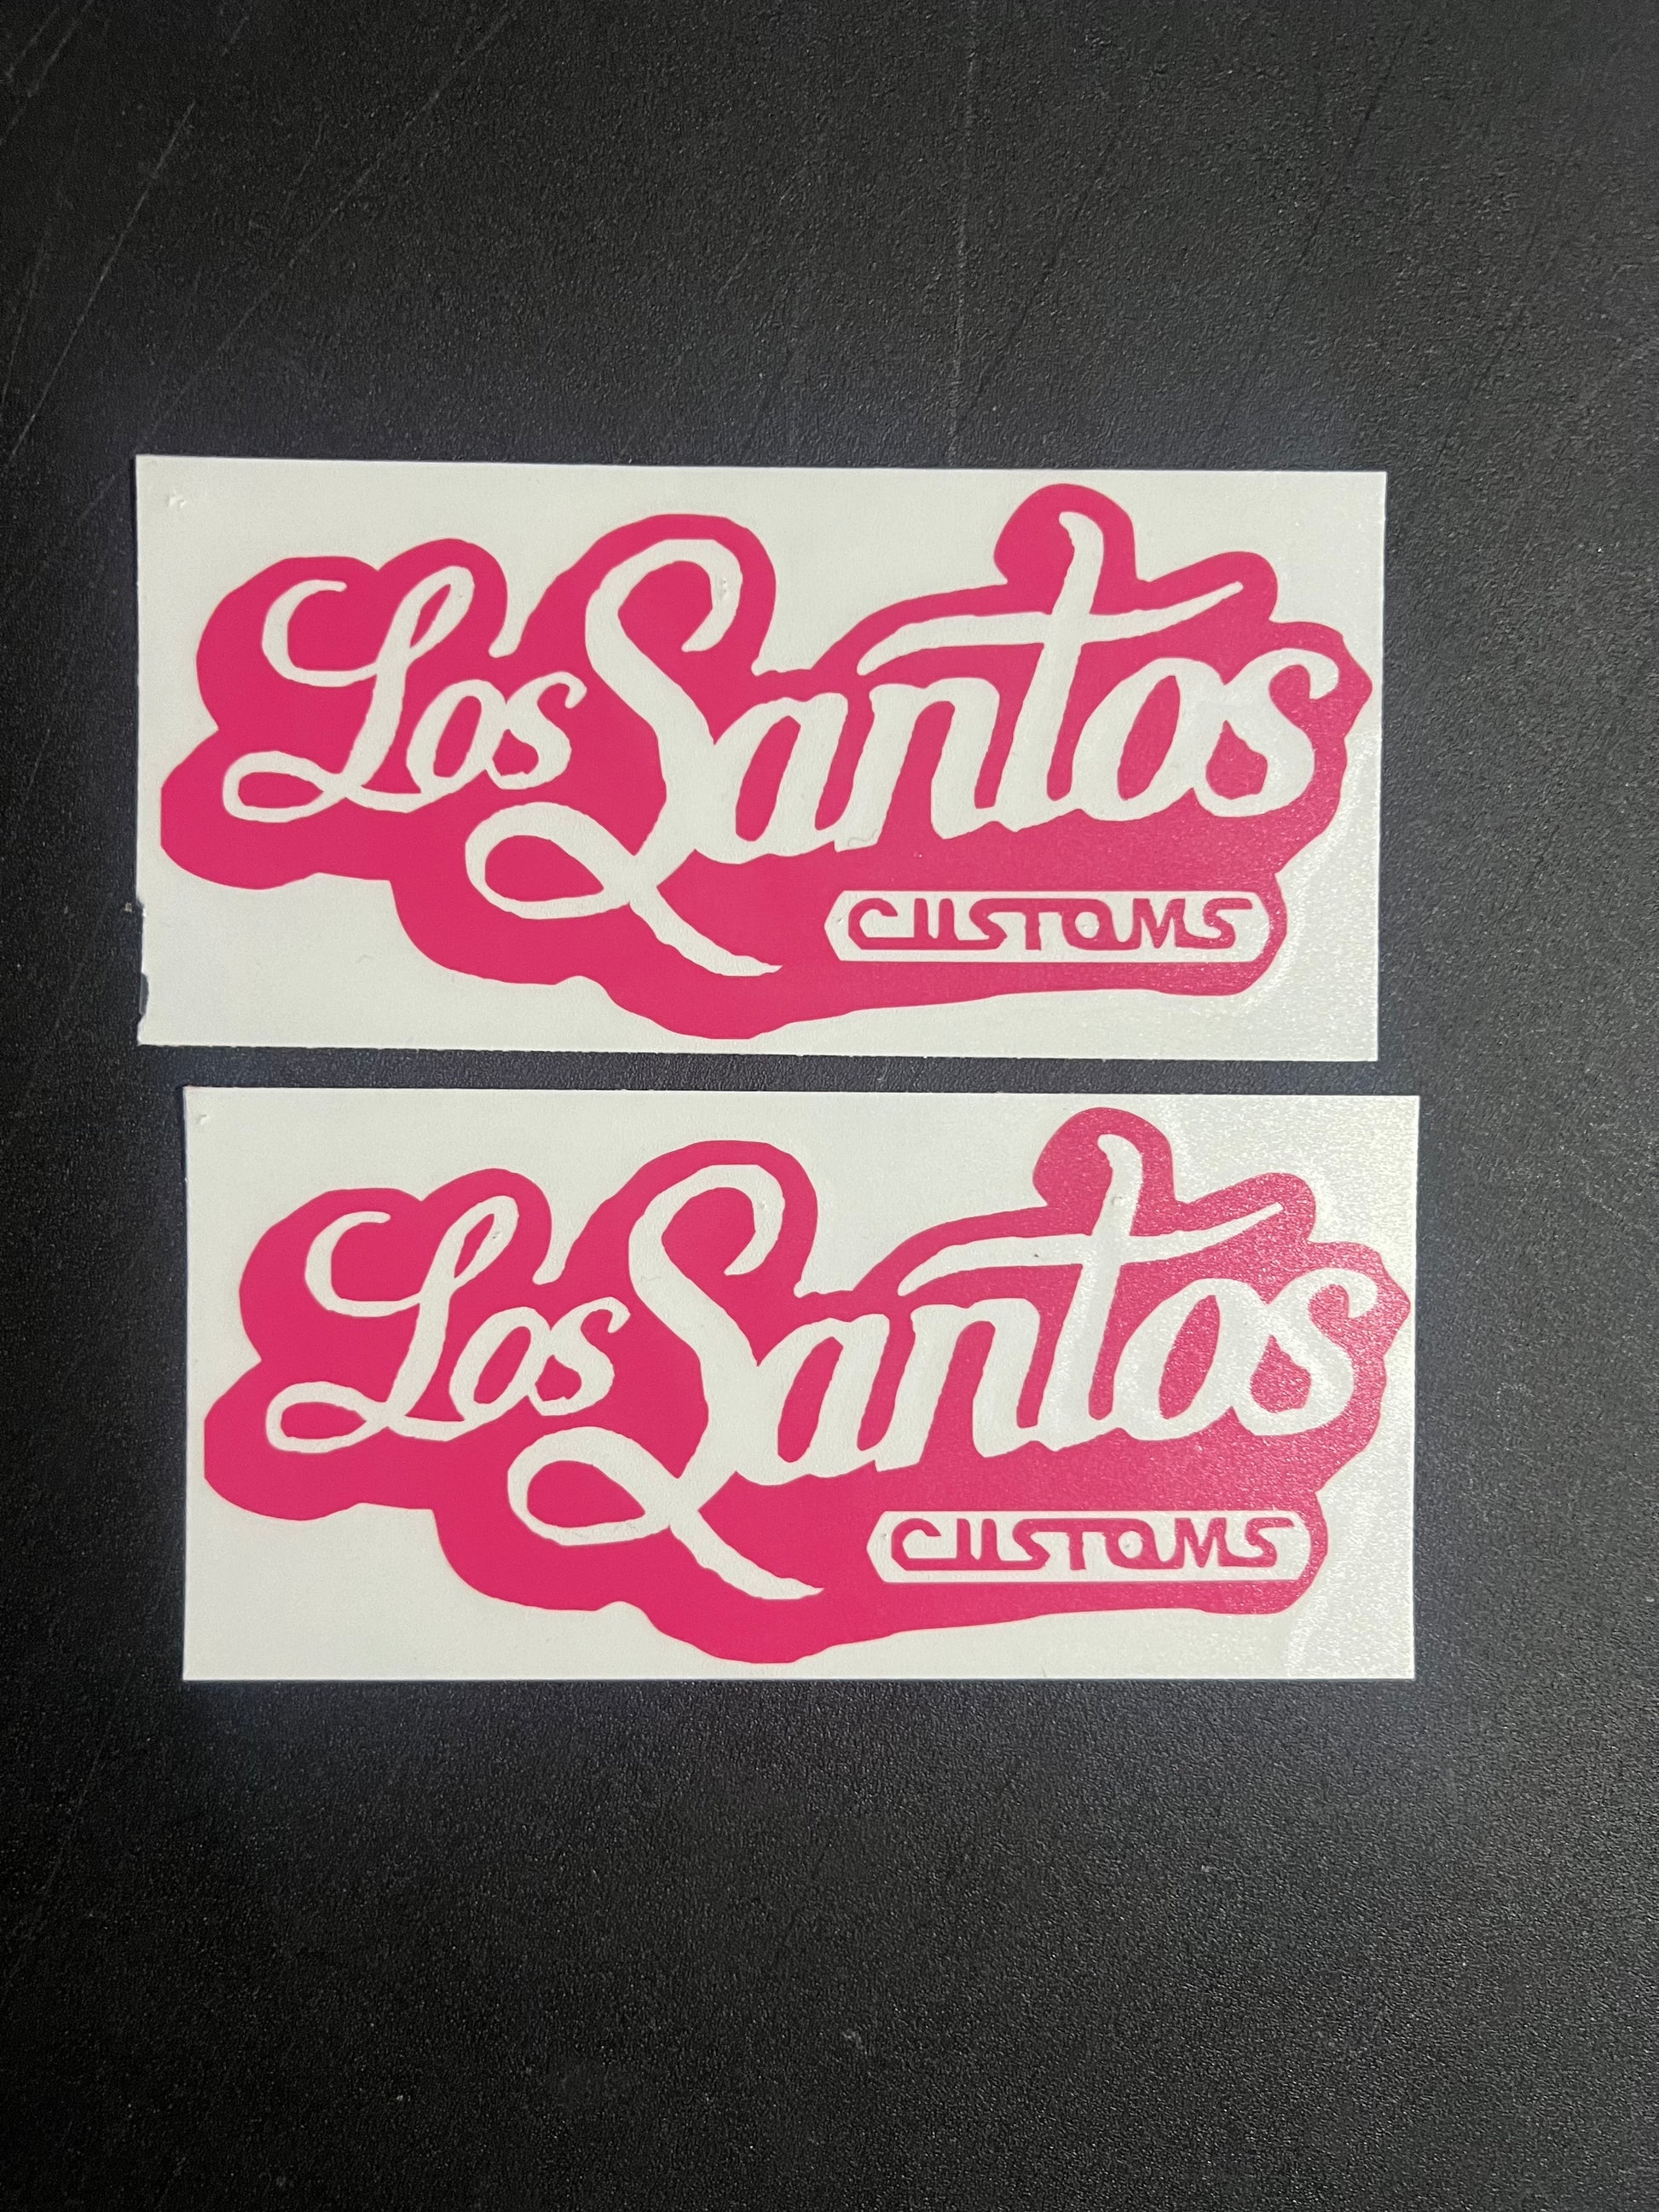 Los Santos Customs - Decals by Bielmann_crr, Community